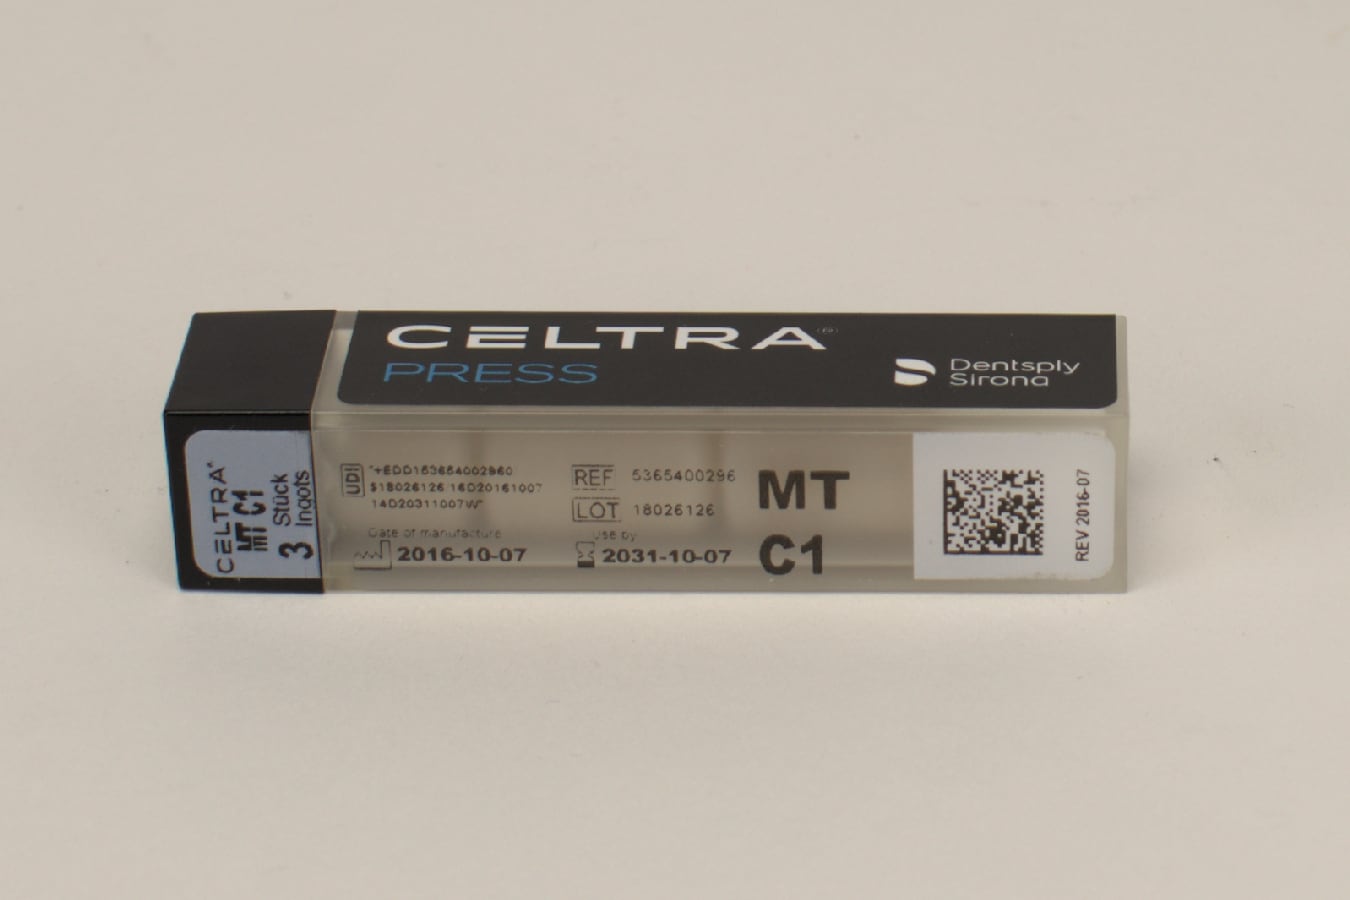 CELTRA PRESS MT C1 3x6g 